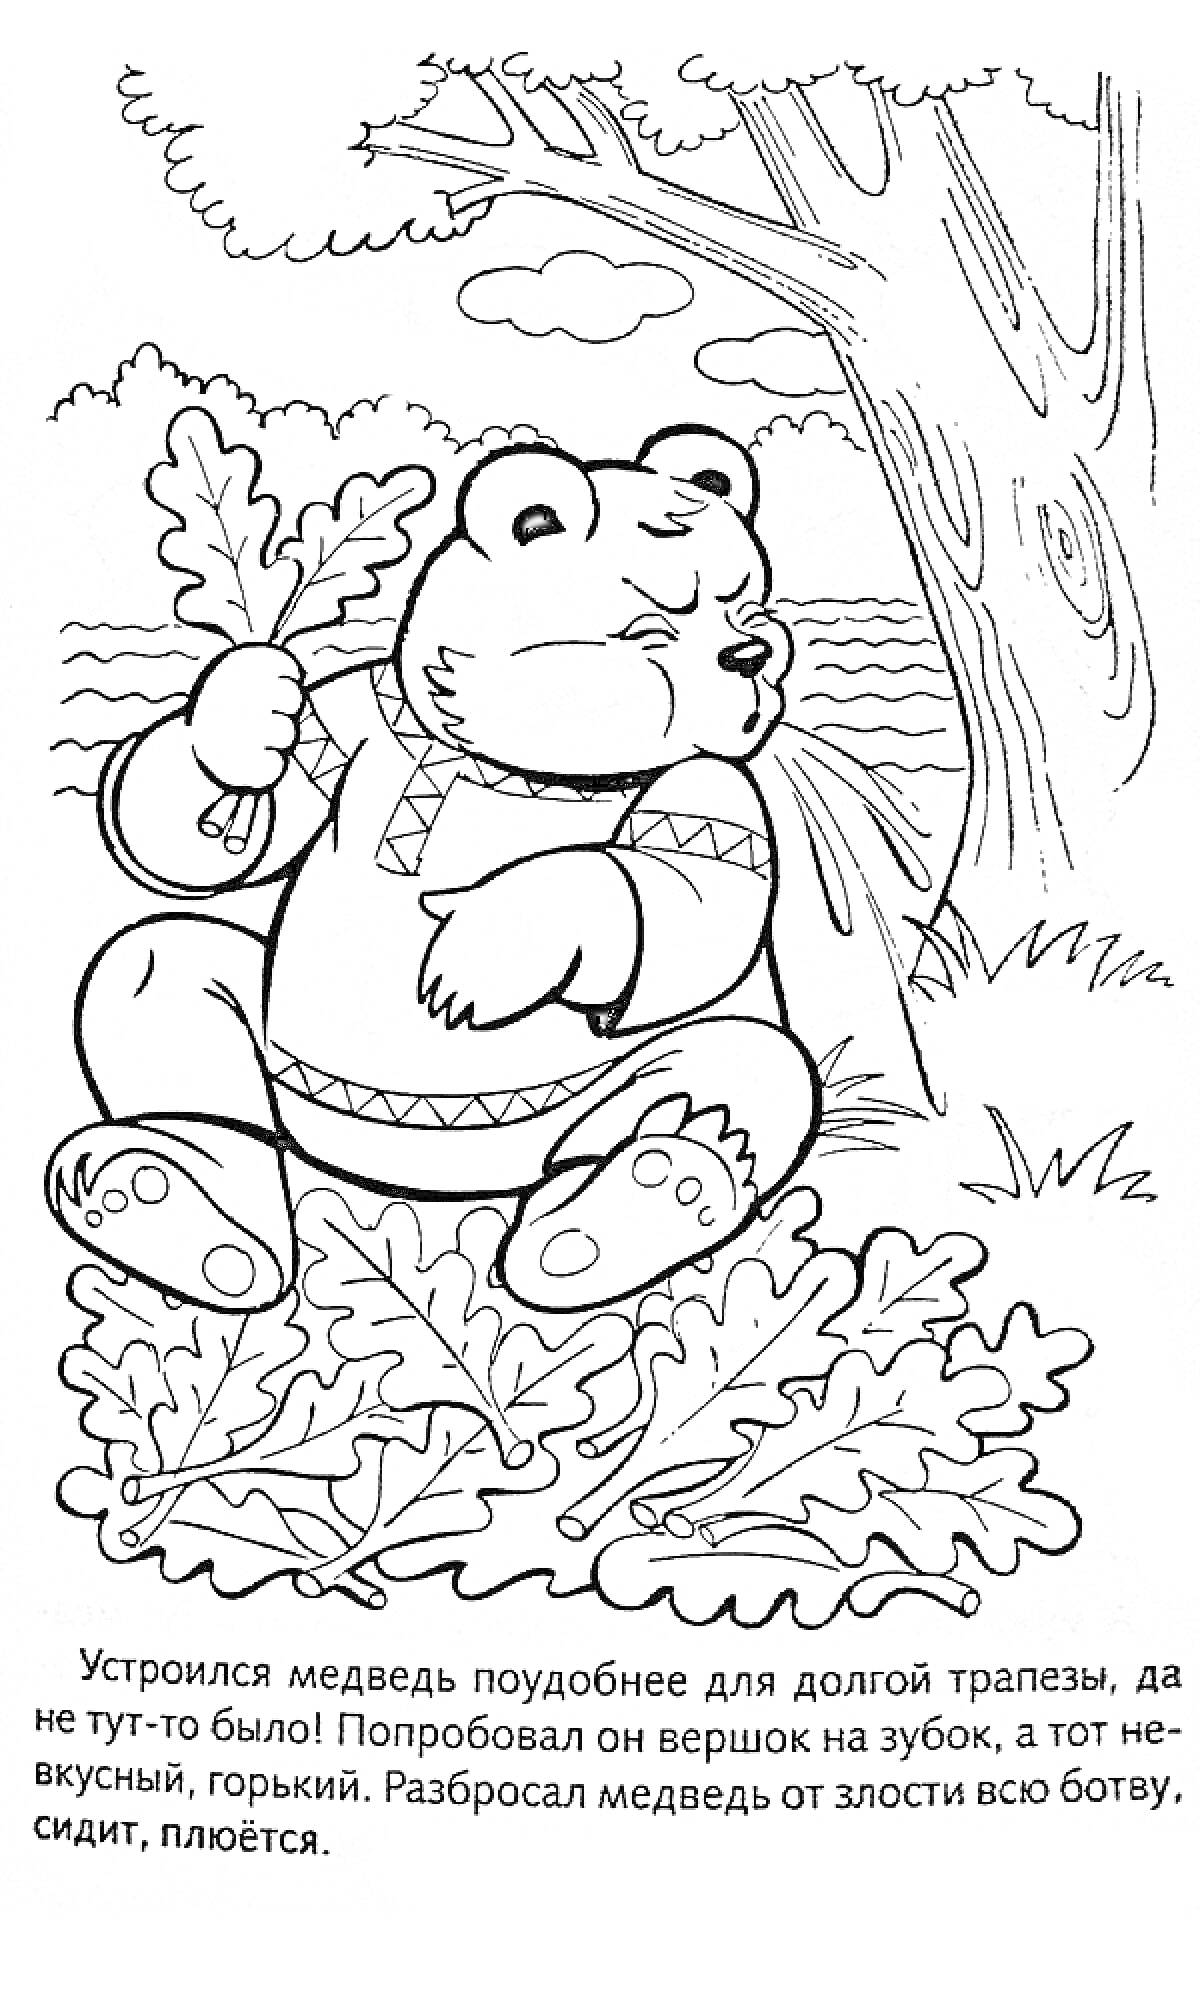 Медведь сидит под деревом с дубовыми листьями, на заднем плане река и облака